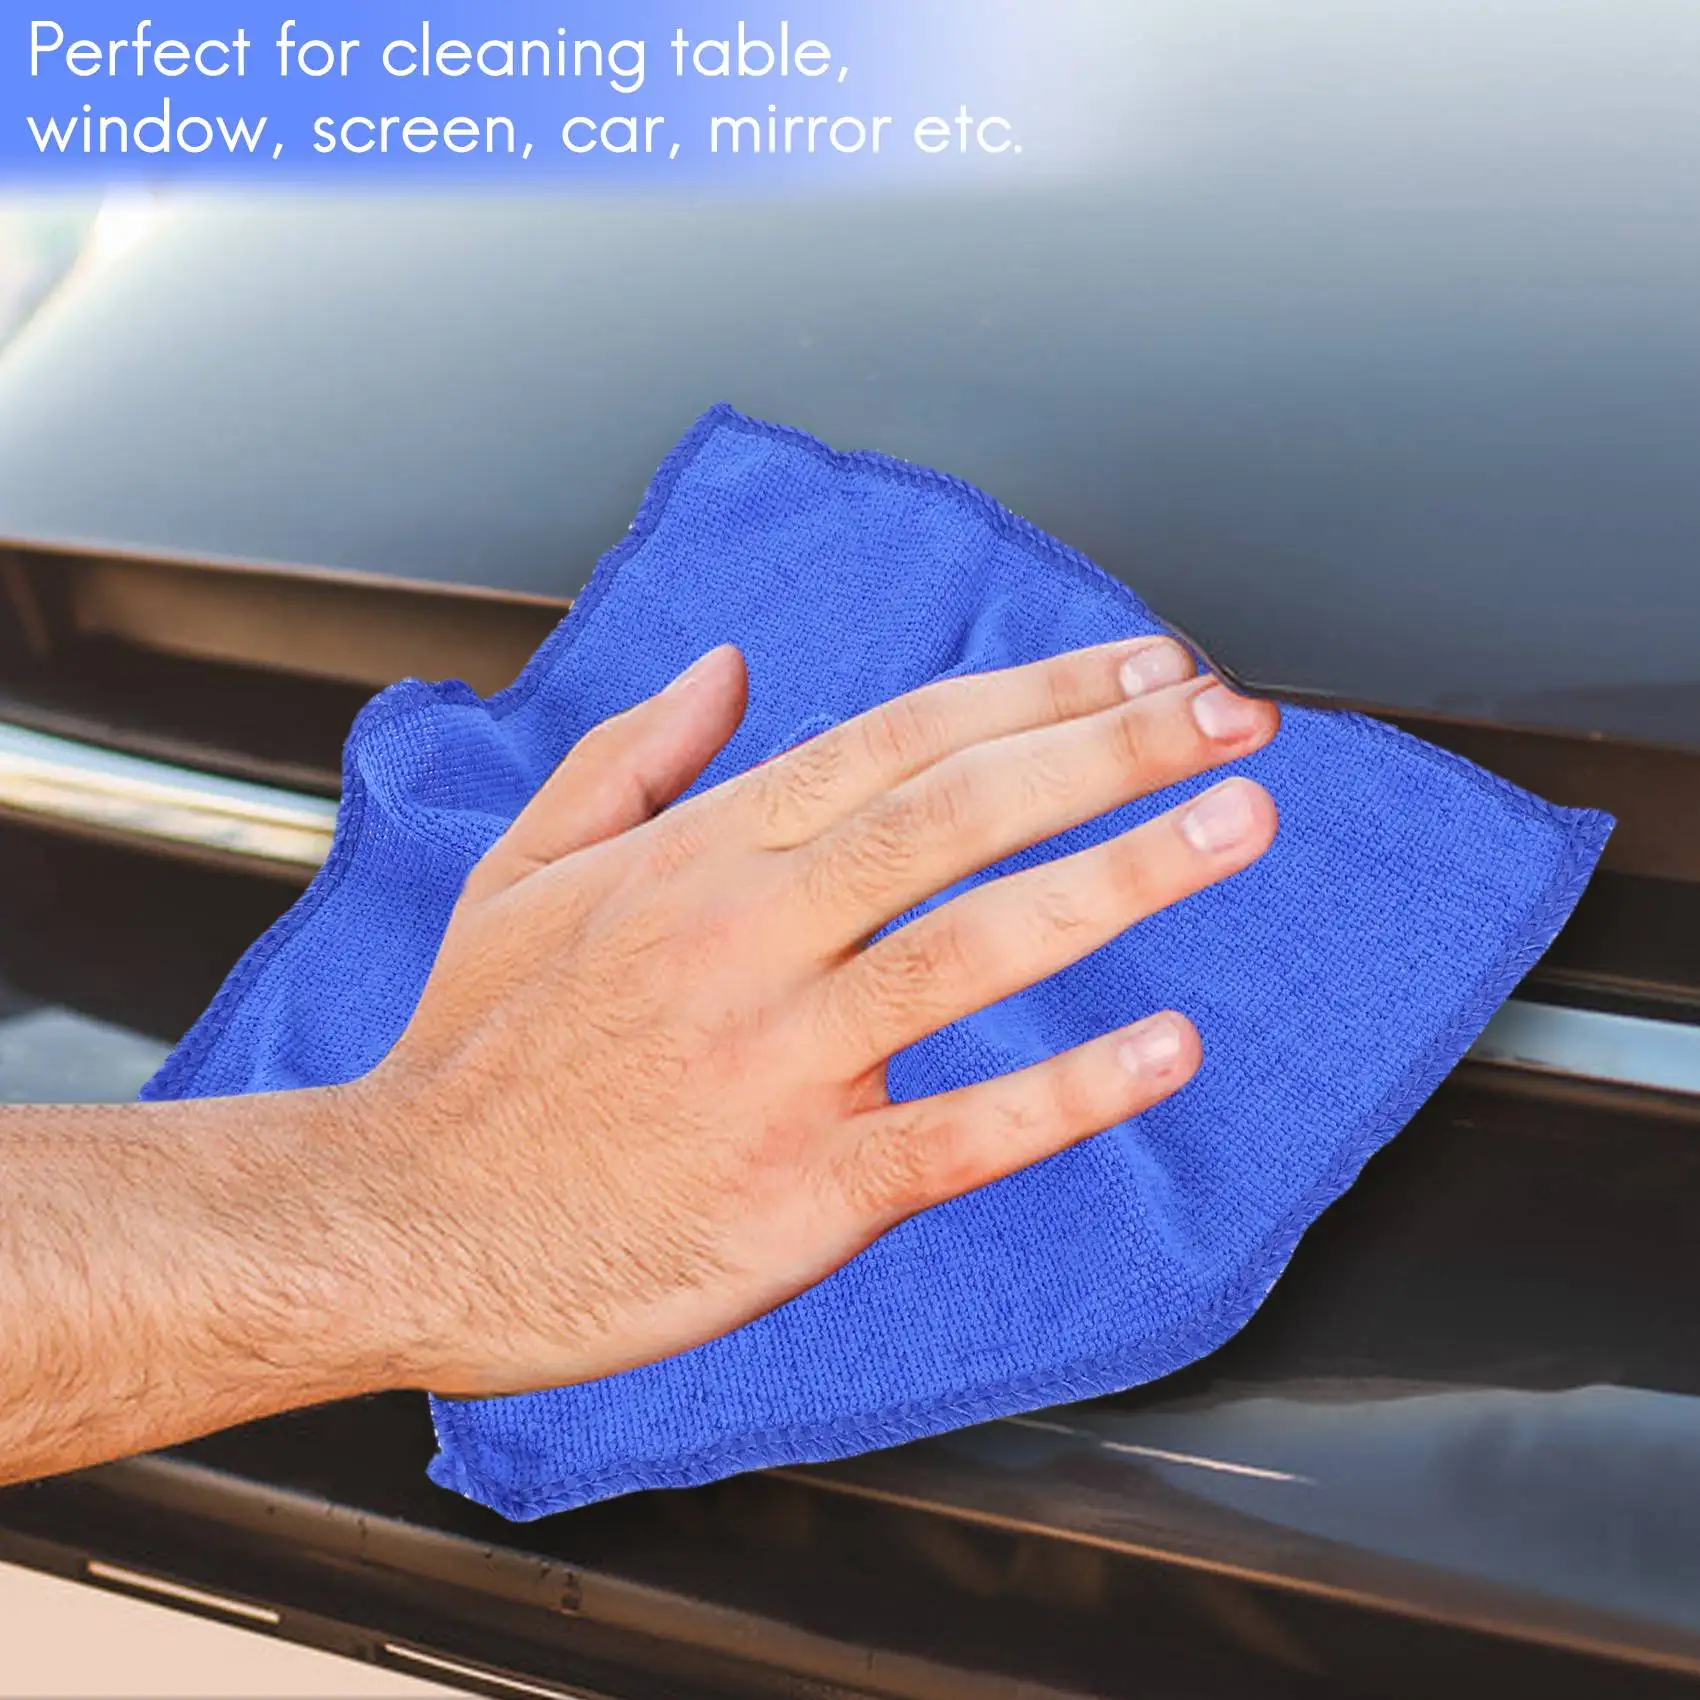 20шт Впитывающее полотенце из микрофибры для мытья автомобиля, дома, кухни, чистая ткань для мытья посуды синего цвета Изображение 3